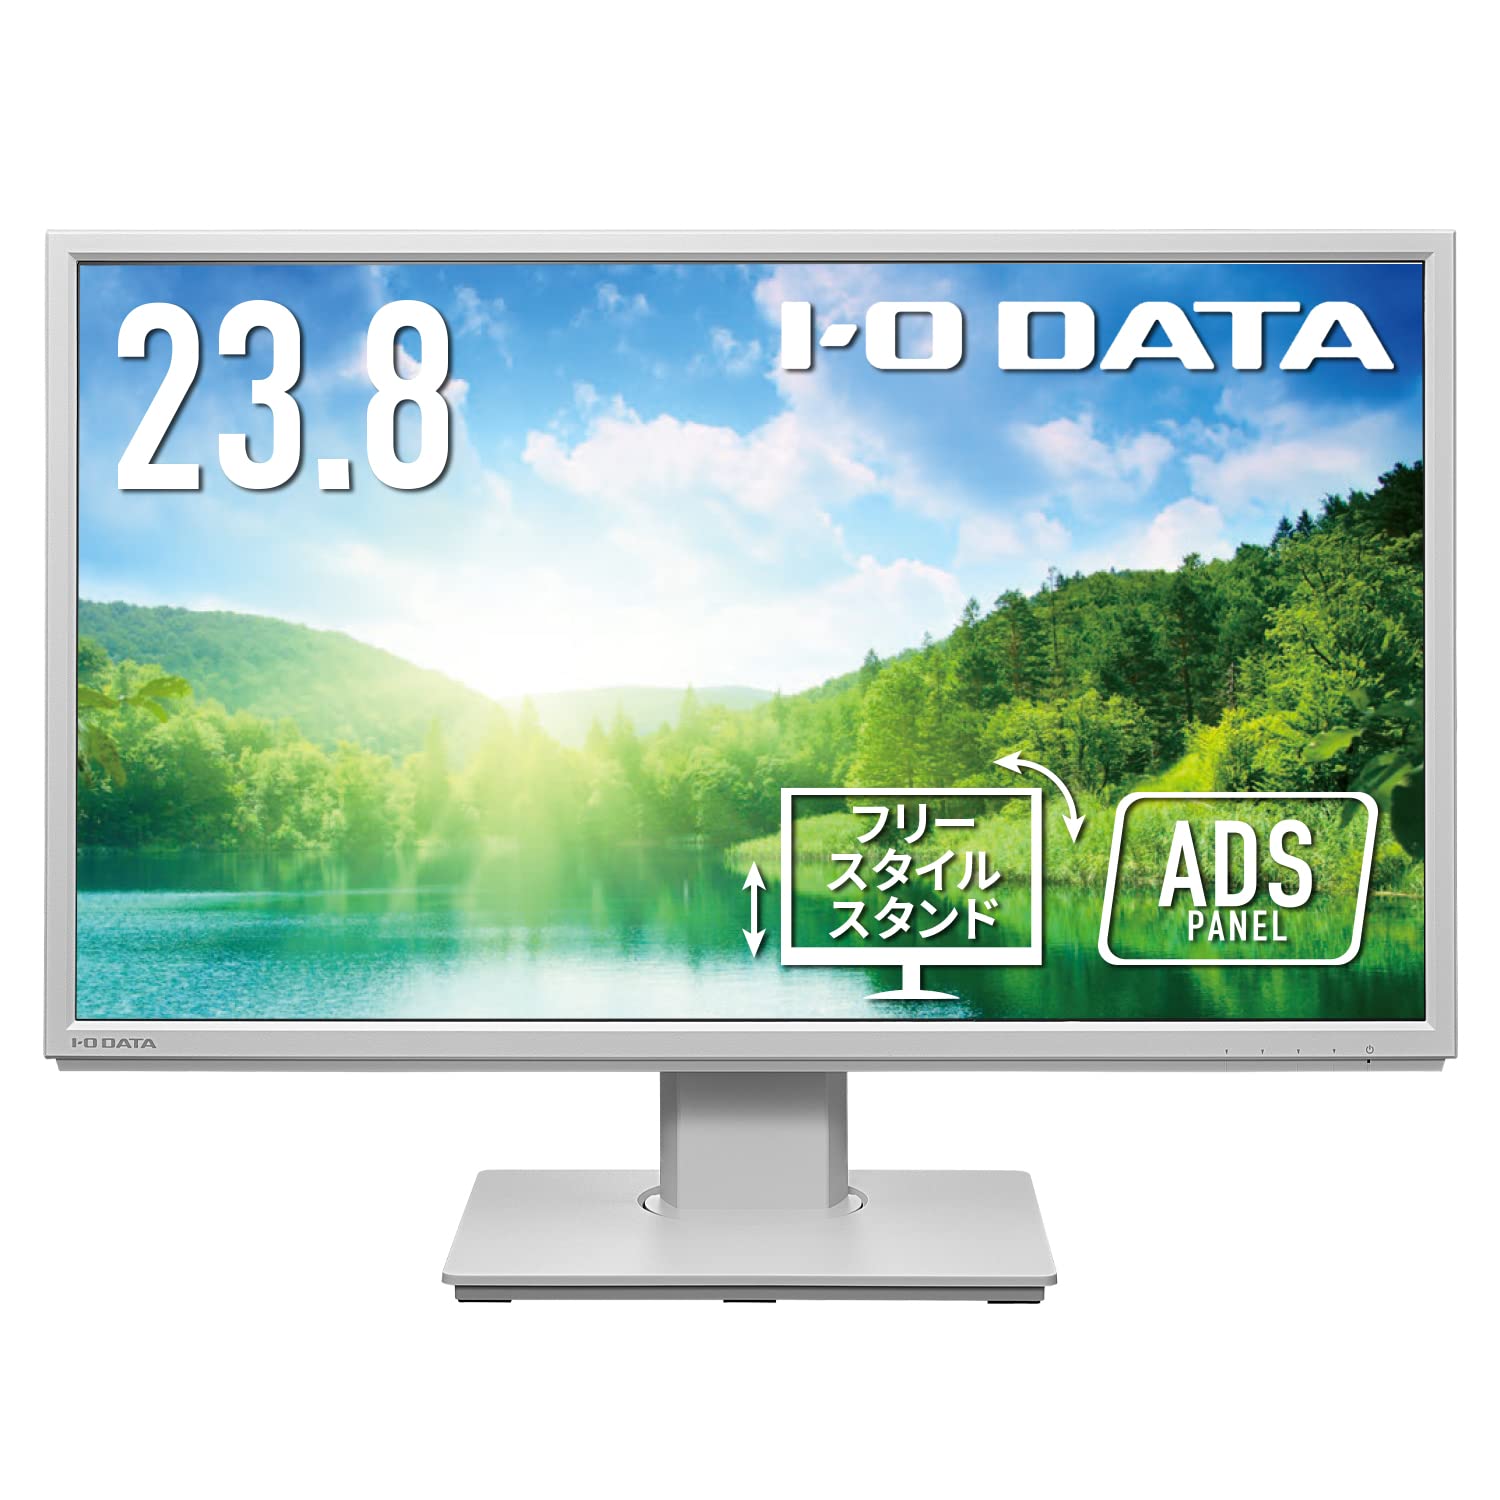 I-O DATA アイ・オー・データ モニター 23.8インチ フルHD ADSパネル ホワイト(HDMI/アナログRGB/DisplayPort/縦横回転/高さ調節/VESA対